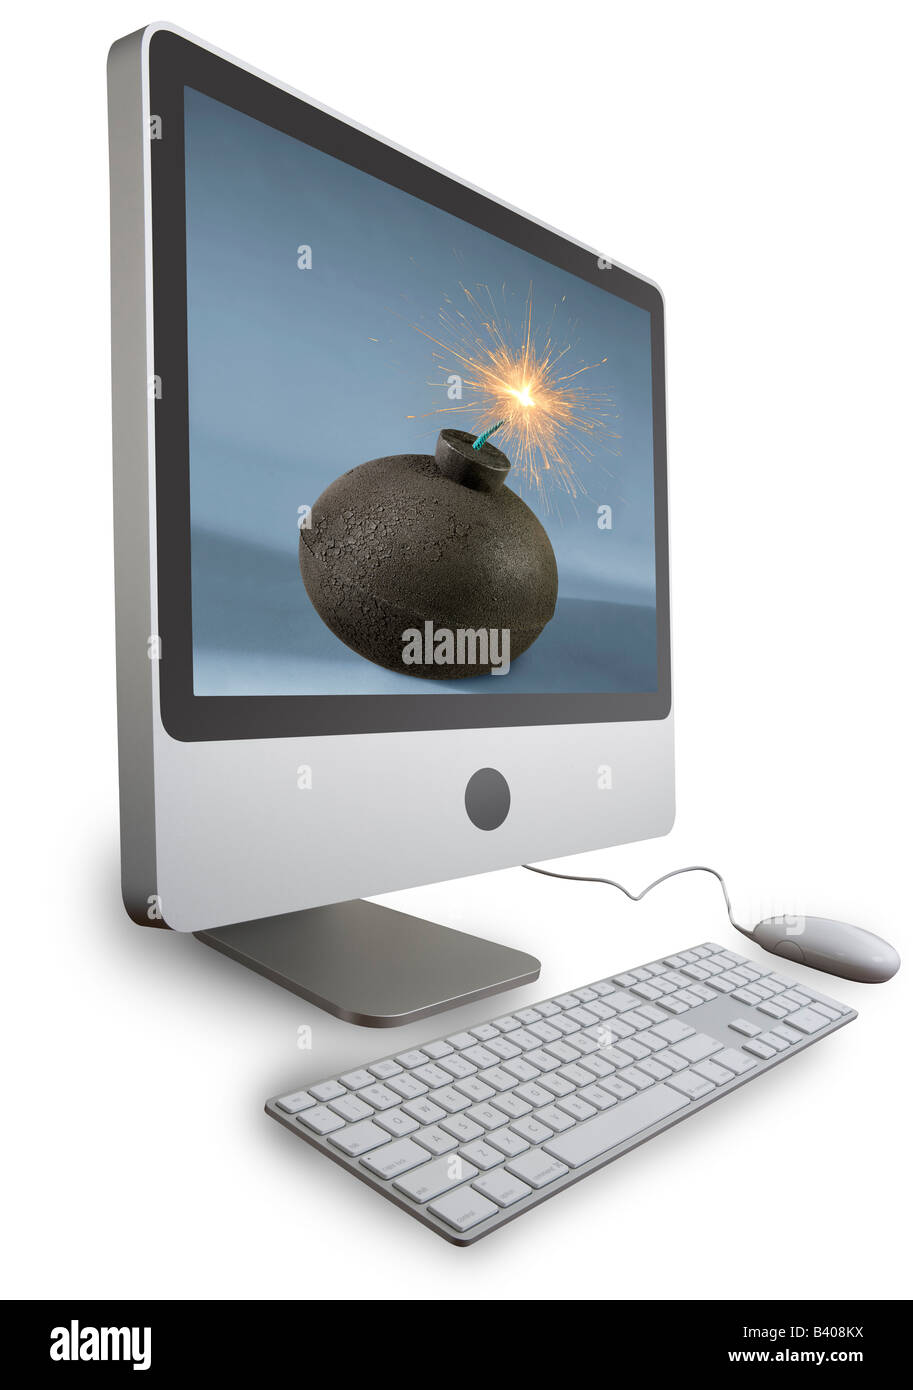 Einen modernen Flachbildschirm-Computer mit eine Runde Bombe und eine beleuchtete Sicherung. Dies ist ein Silo mit zwei Pfade enthalten - Bildschirm und alles. Stockfoto